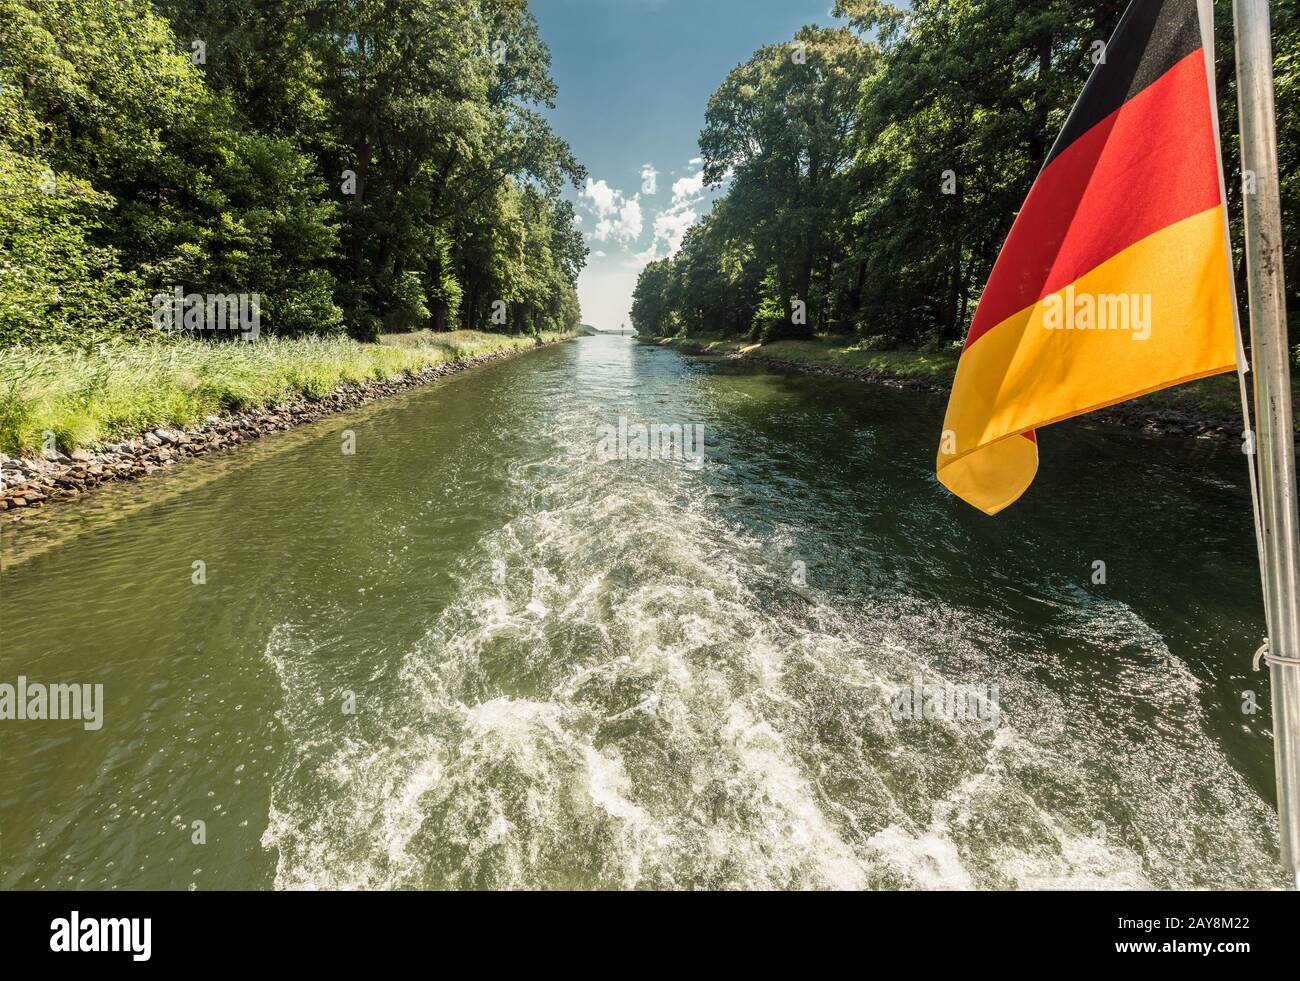 Eje de transmisión de un barco en un canal que paso con ondeando la bandera de Alemania Foto de stock